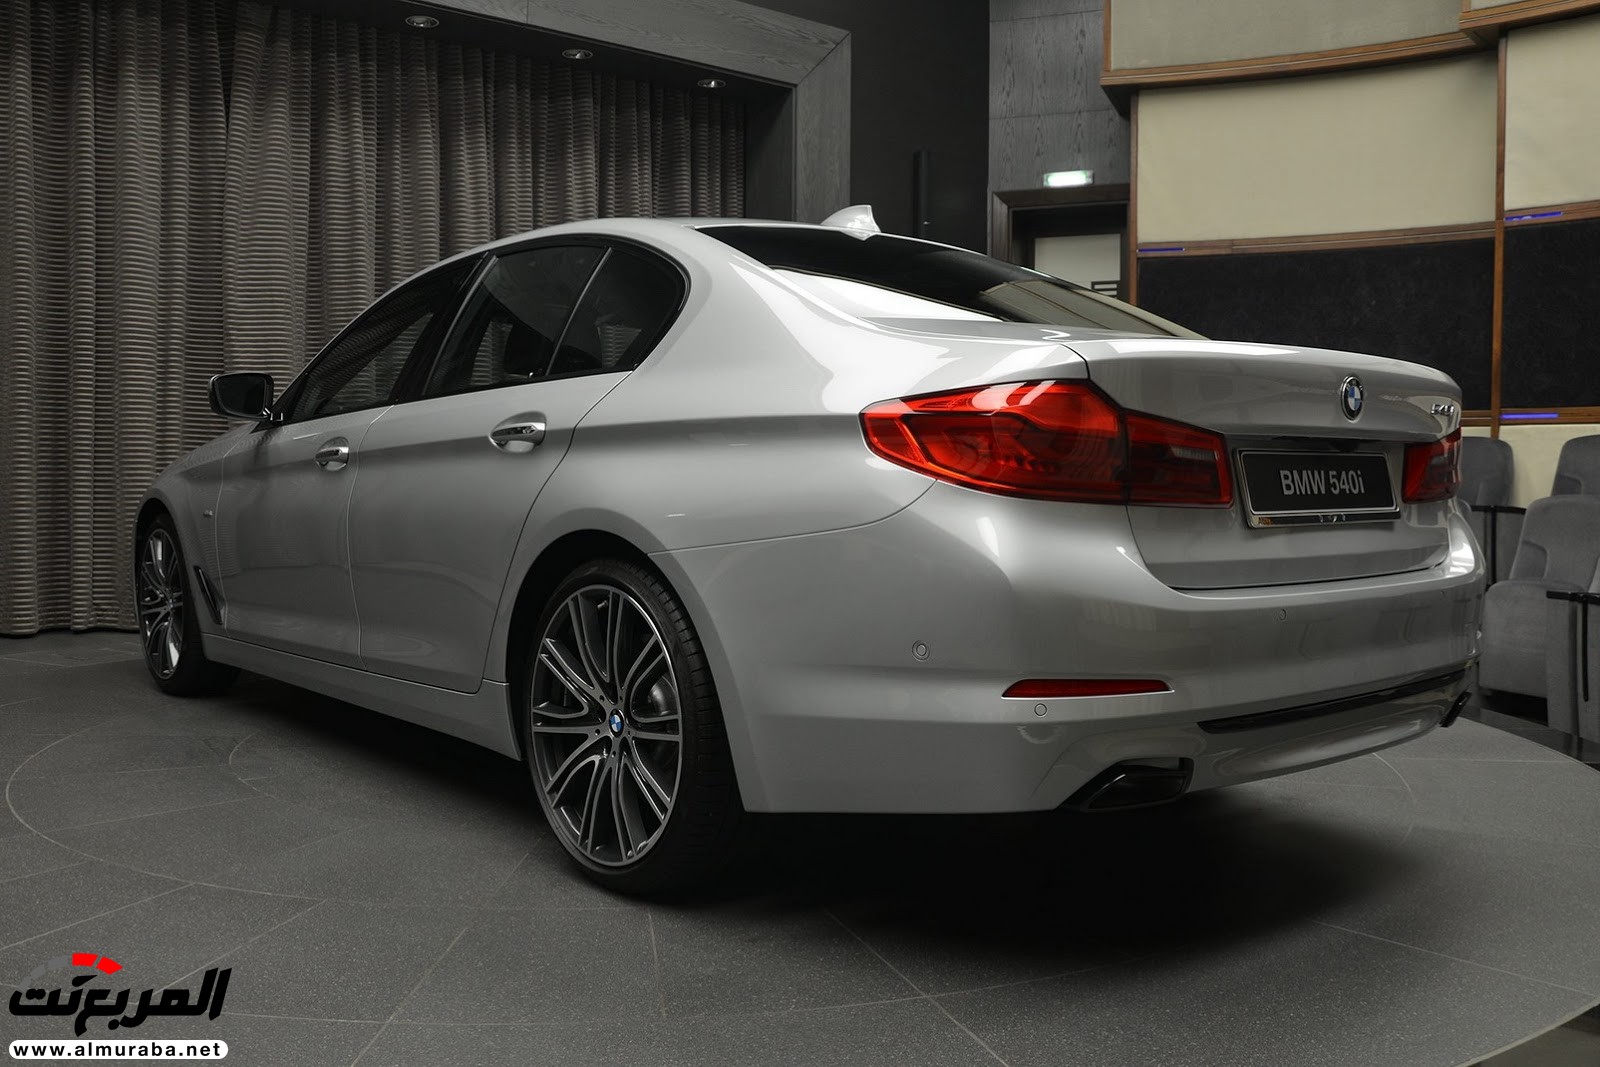 "بي إم دبليو" 540i الجديدة كلياً بتعديلات سبورت لاين معروضة بأبو ظبي BMW 5